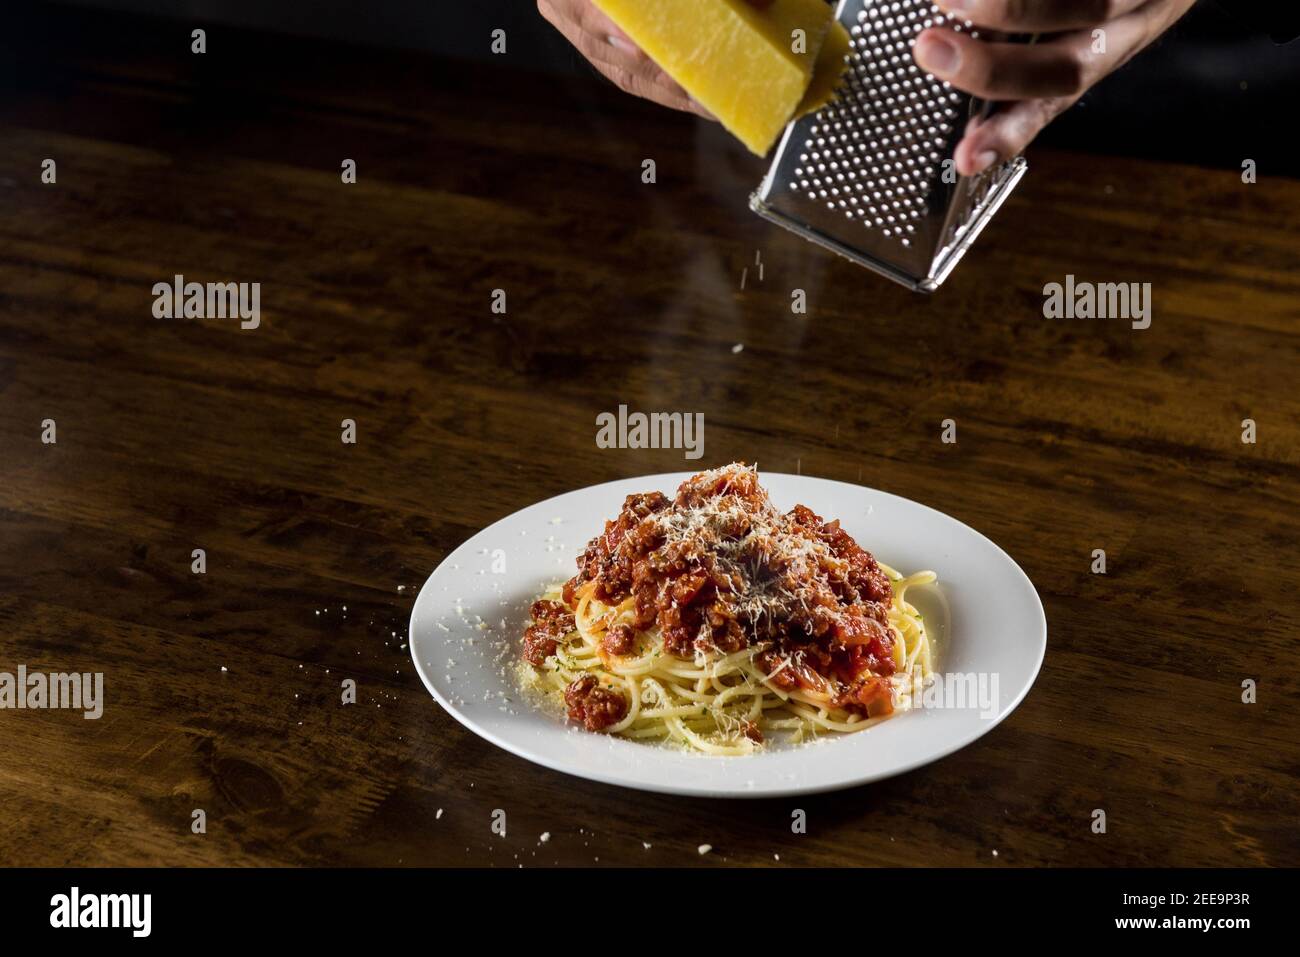 Der Koch reibe Parmesankäse auf Spaghetti Bolognese Weißes Gericht am Tisch Stockfoto